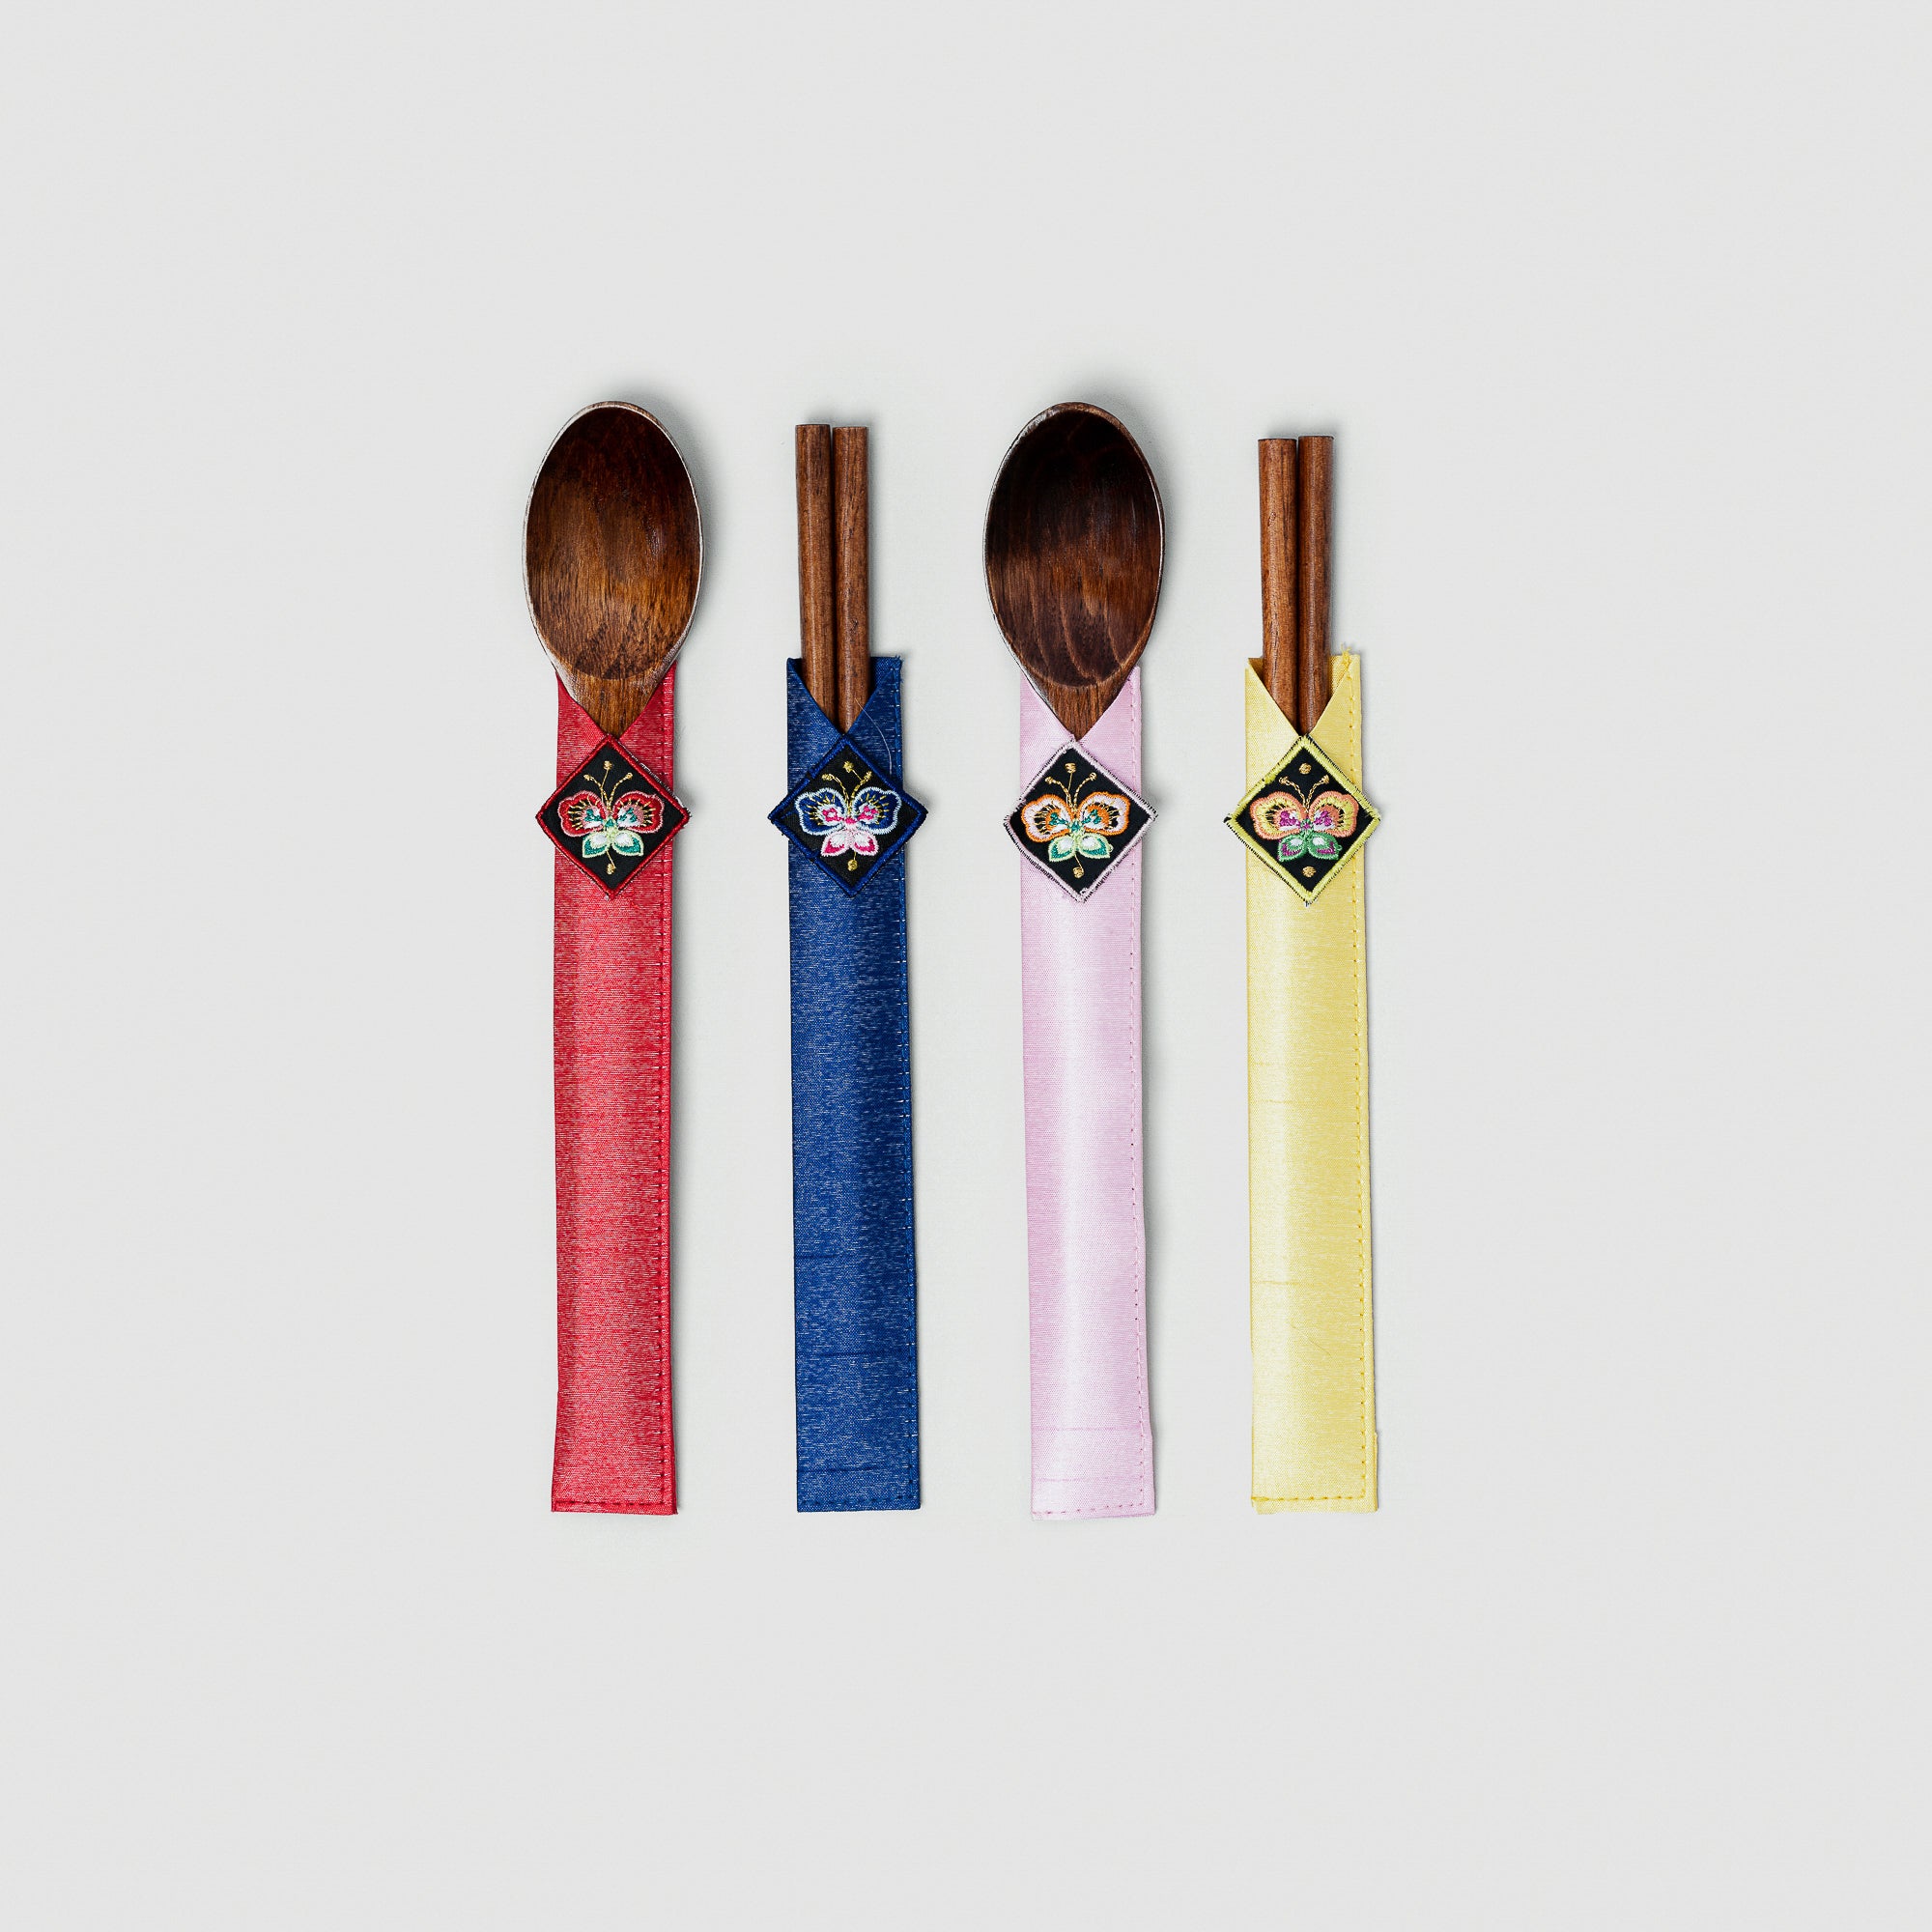 Wooden Spoon & Chopsticks Set